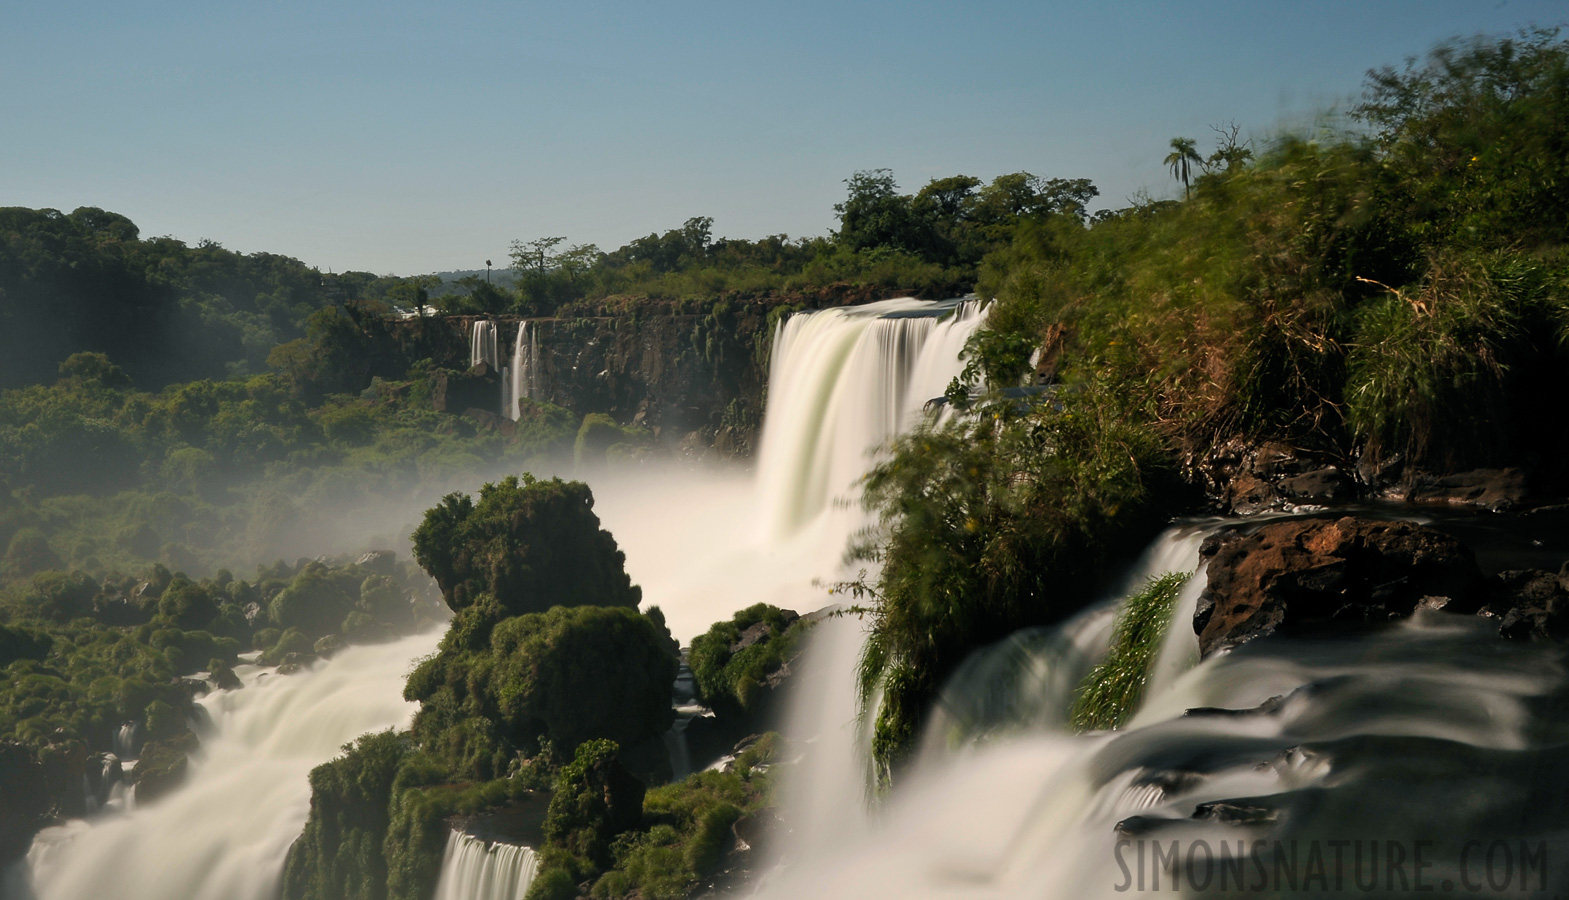 Cataratas del Iguazu [36 mm, 10.0 Sek. bei f / 22, ISO 200]